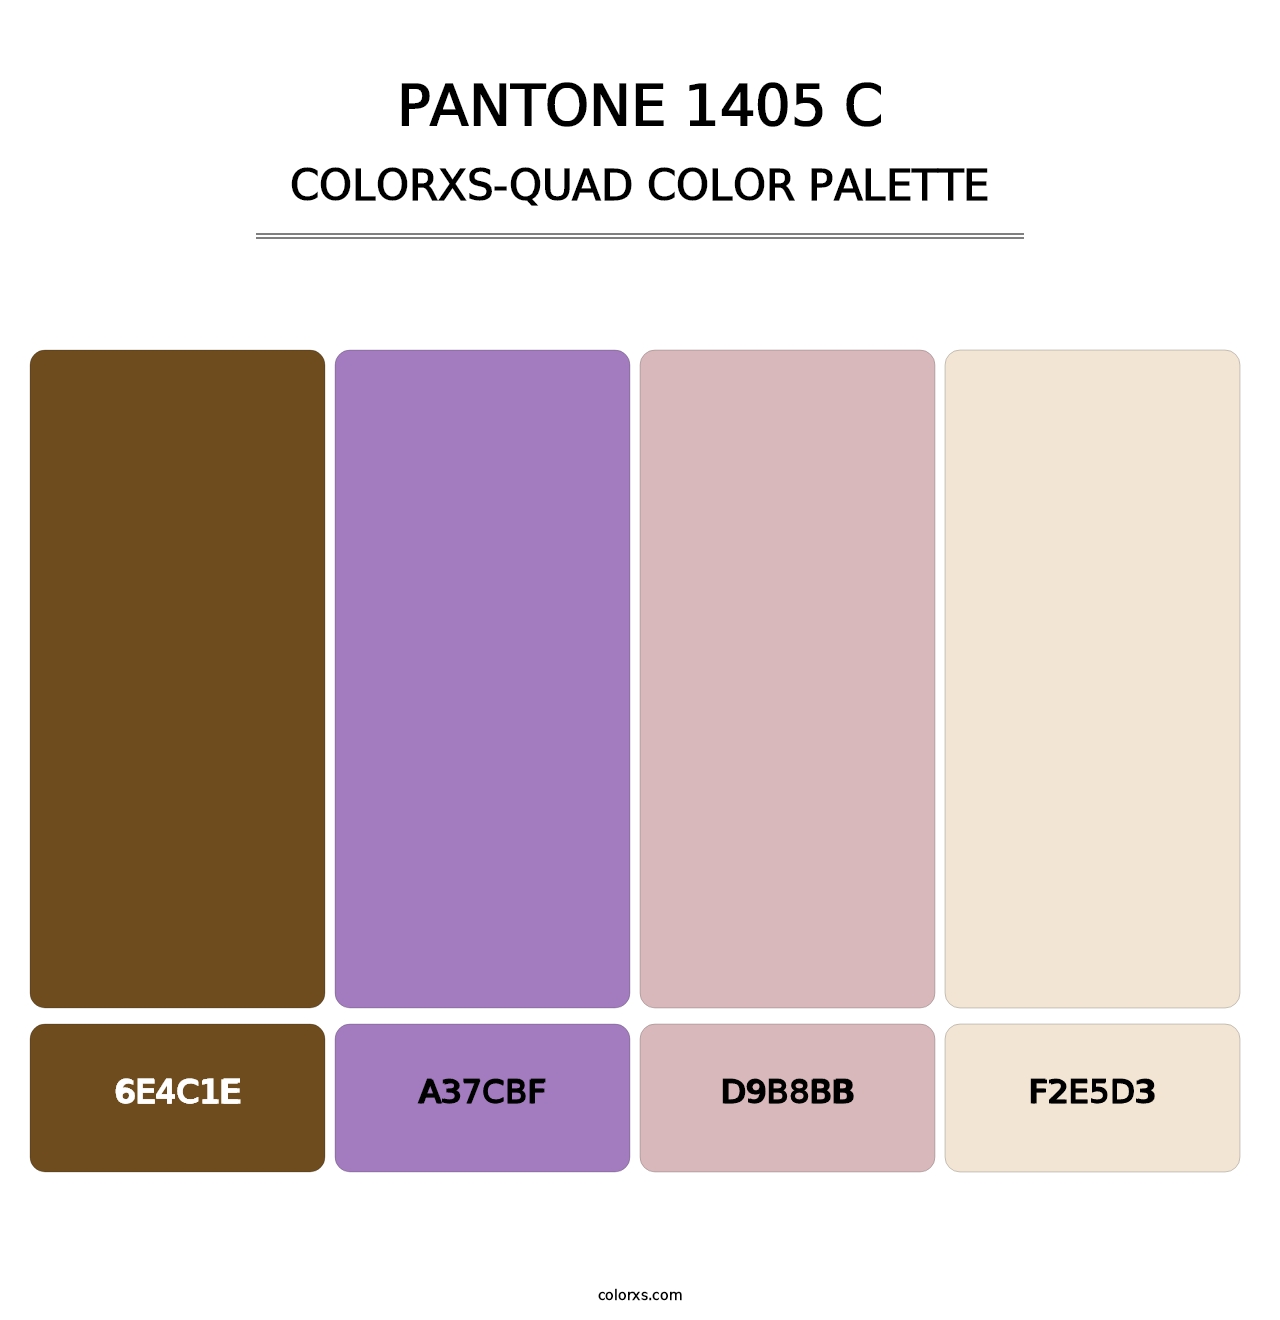 PANTONE 1405 C - Colorxs Quad Palette